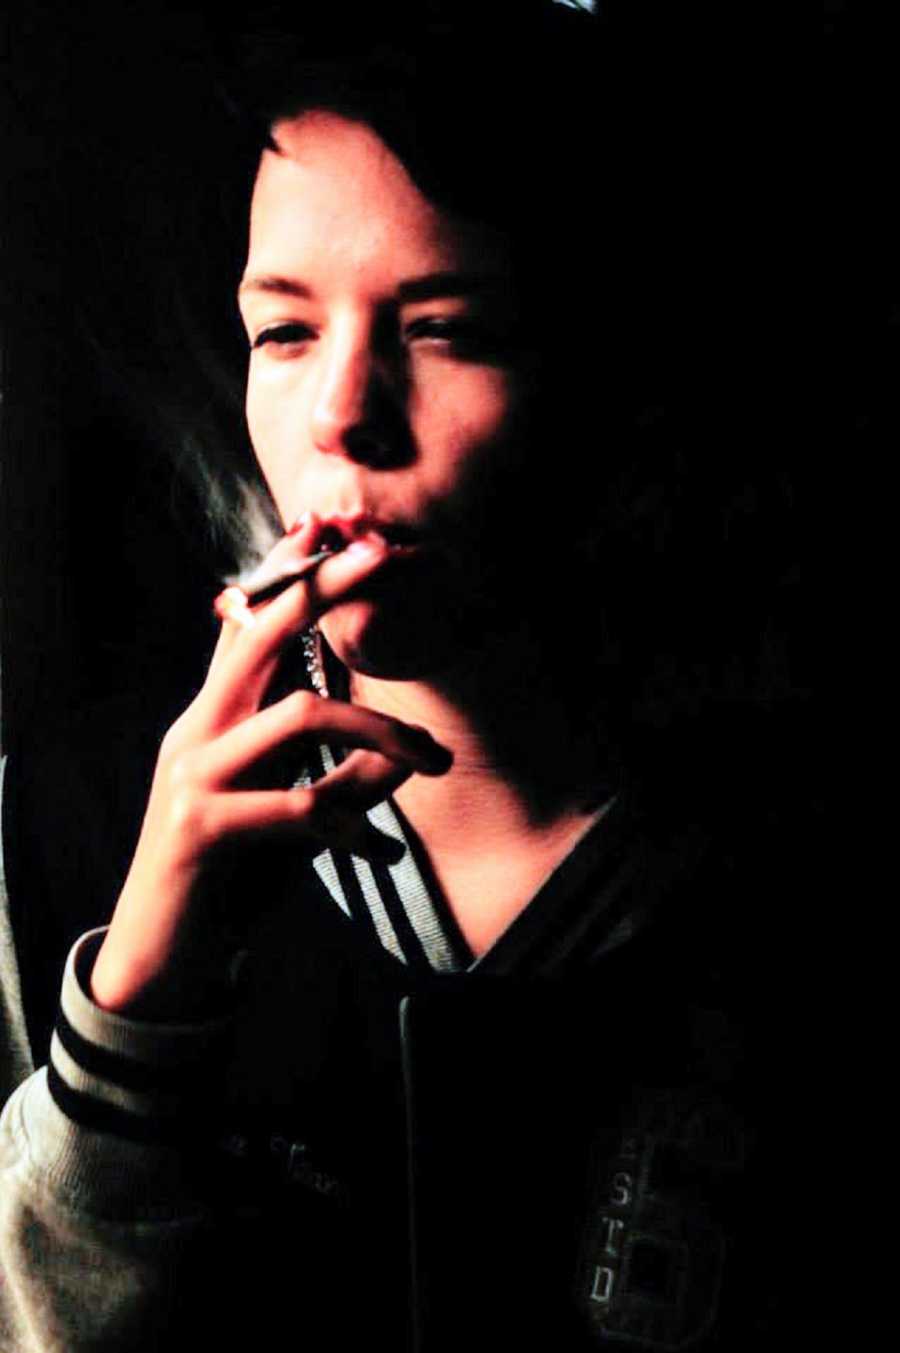 A person smokes a cigarette